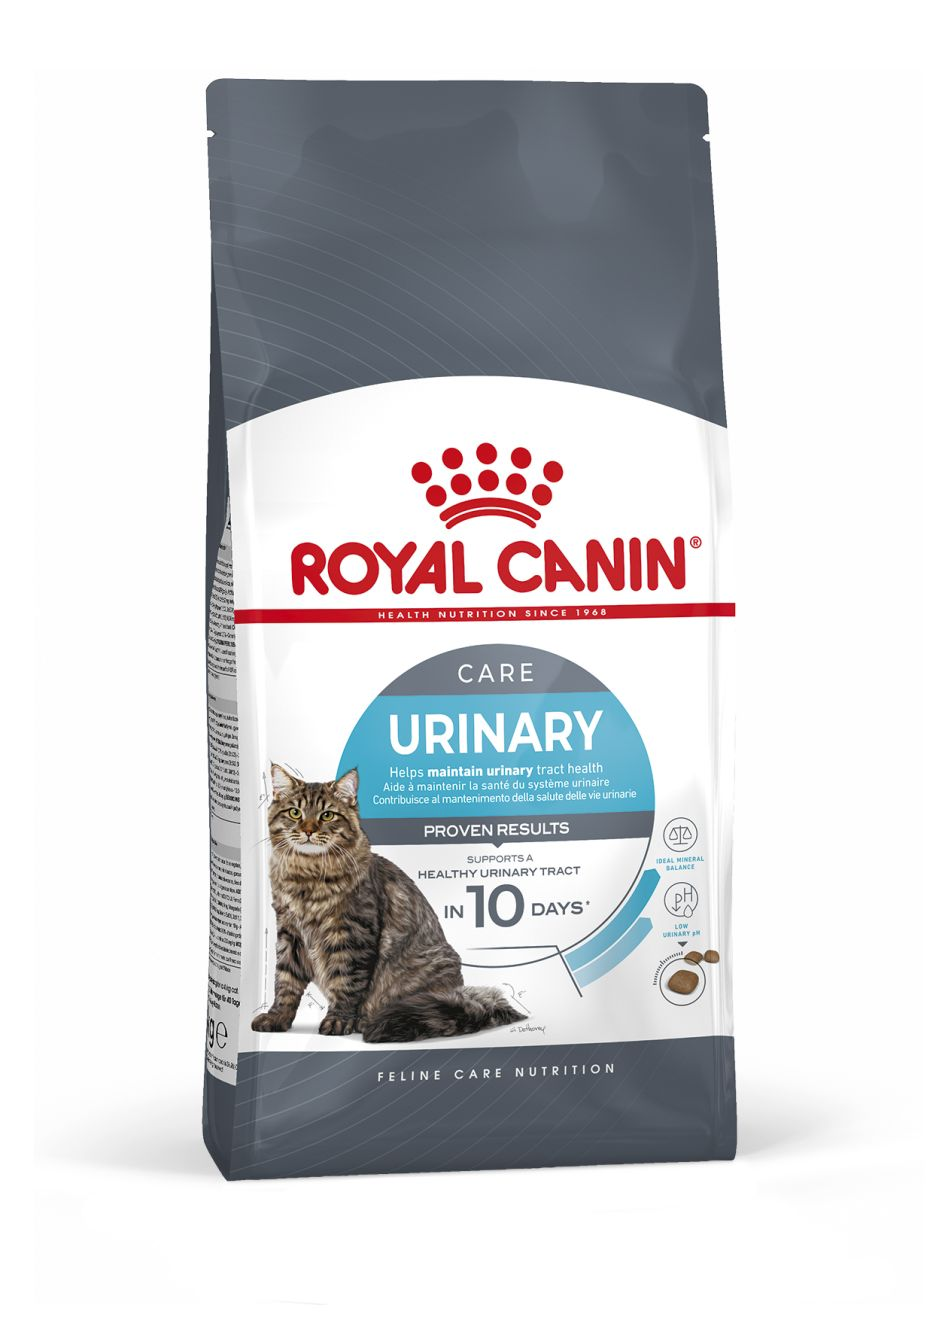 Royal canin urinary care для кошек. Роял Канин Уринари Care.